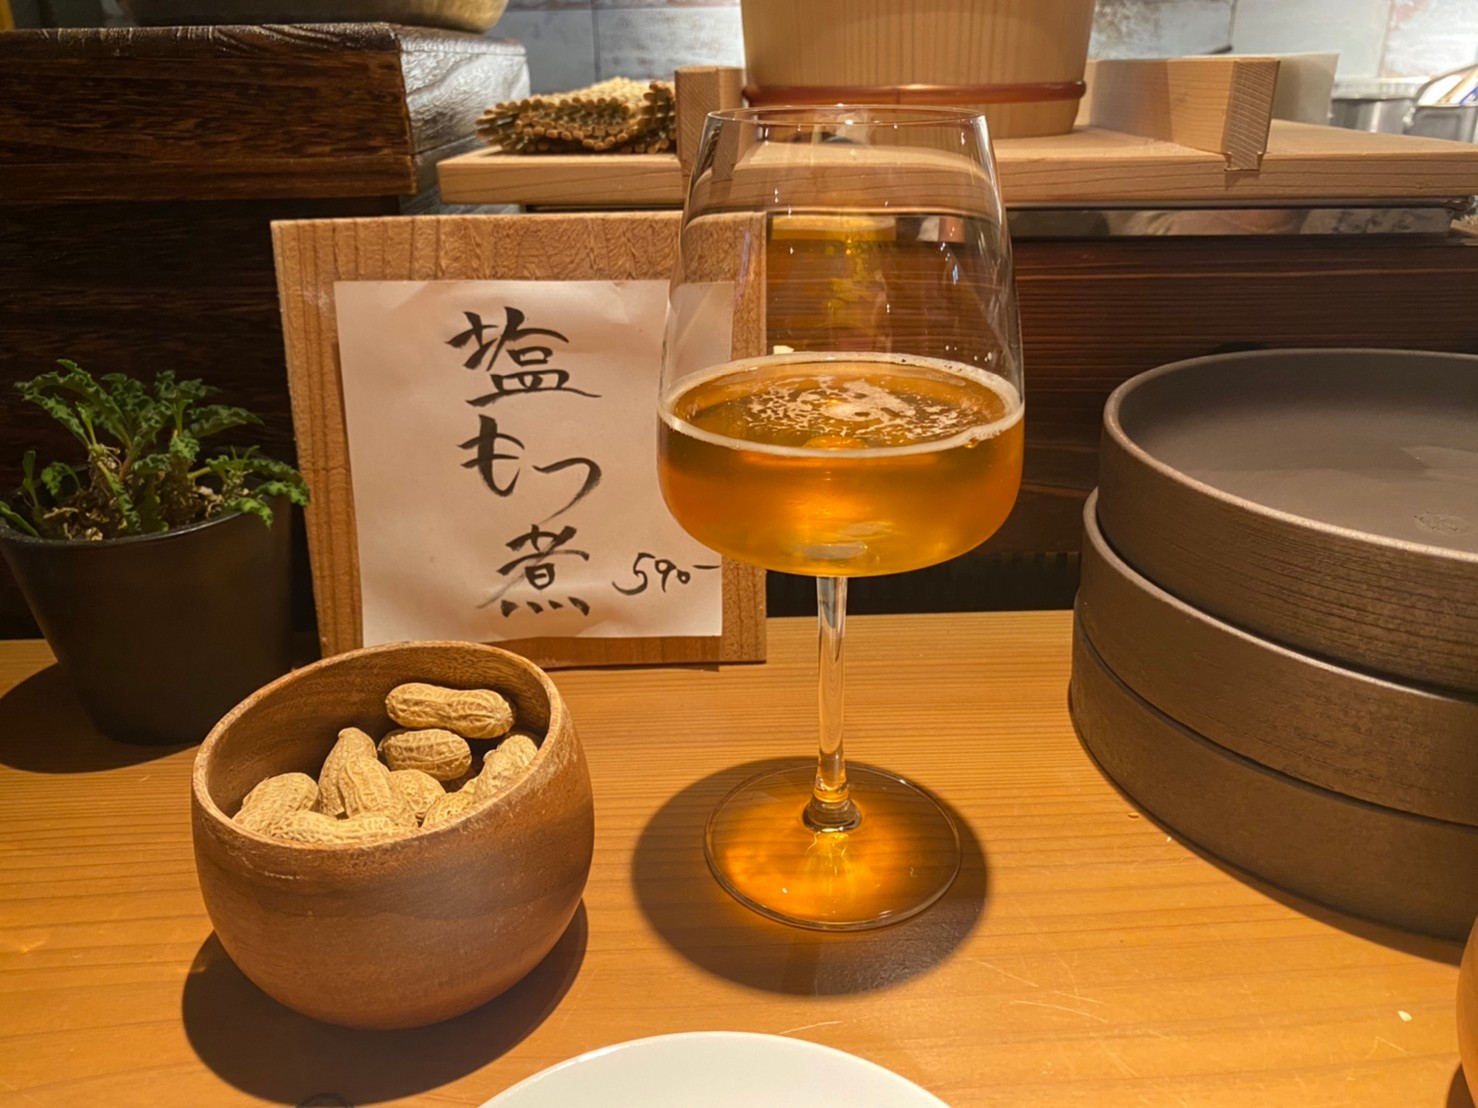 名古屋にサンチャがやってきた 栄の居酒屋 三元茶屋 サンチャ は古民家を利用した雰囲気も味もいい居酒屋